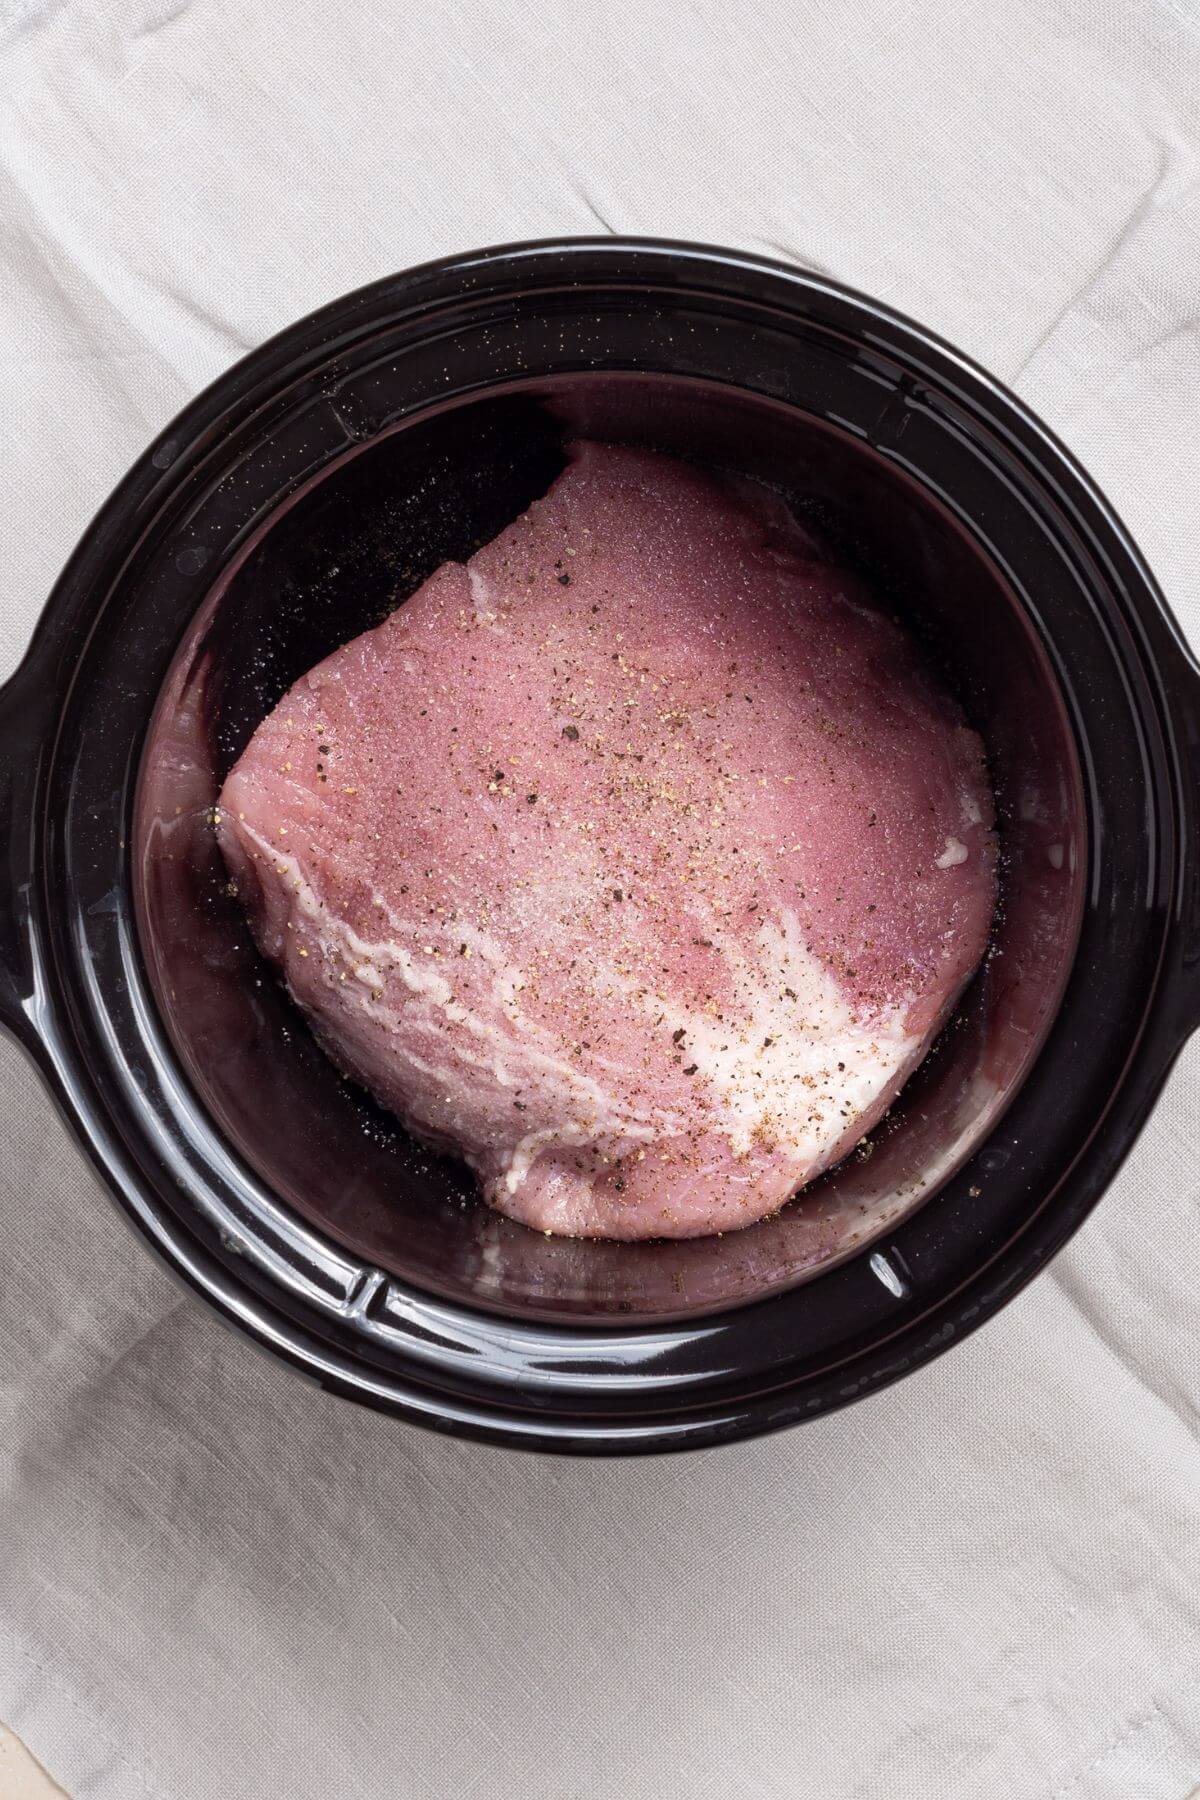 A piece of seasoned pork loin in a black crock pot.